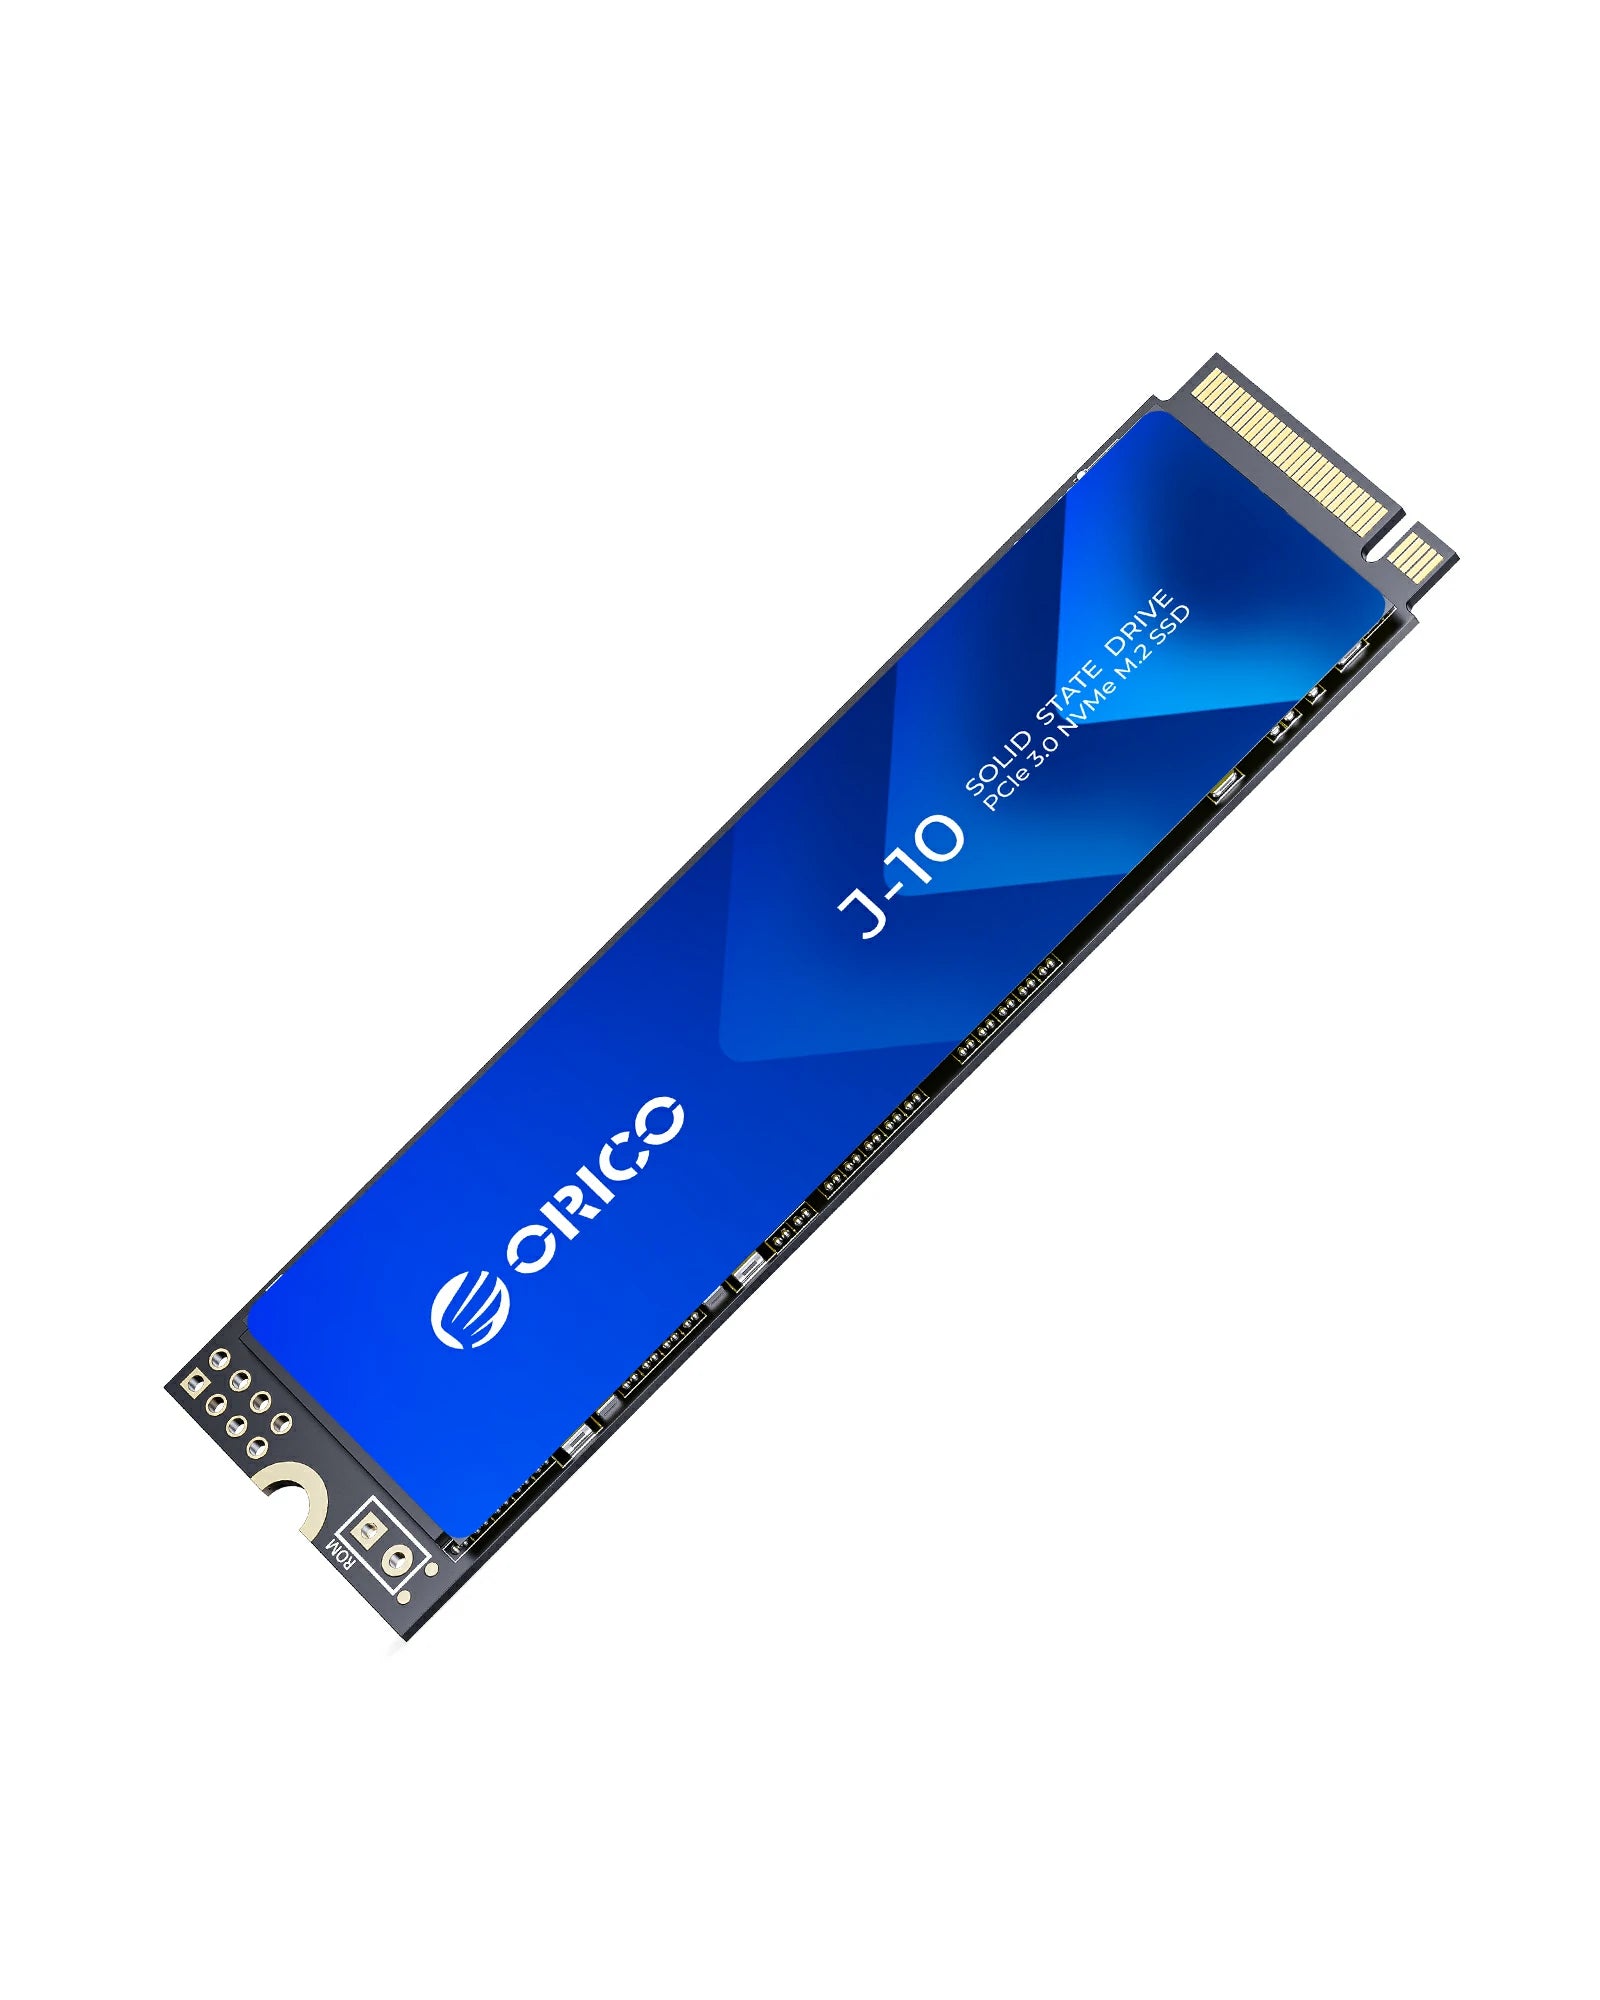 ORICO J-10 PCIe 3.0 NVMe M.2 SSD